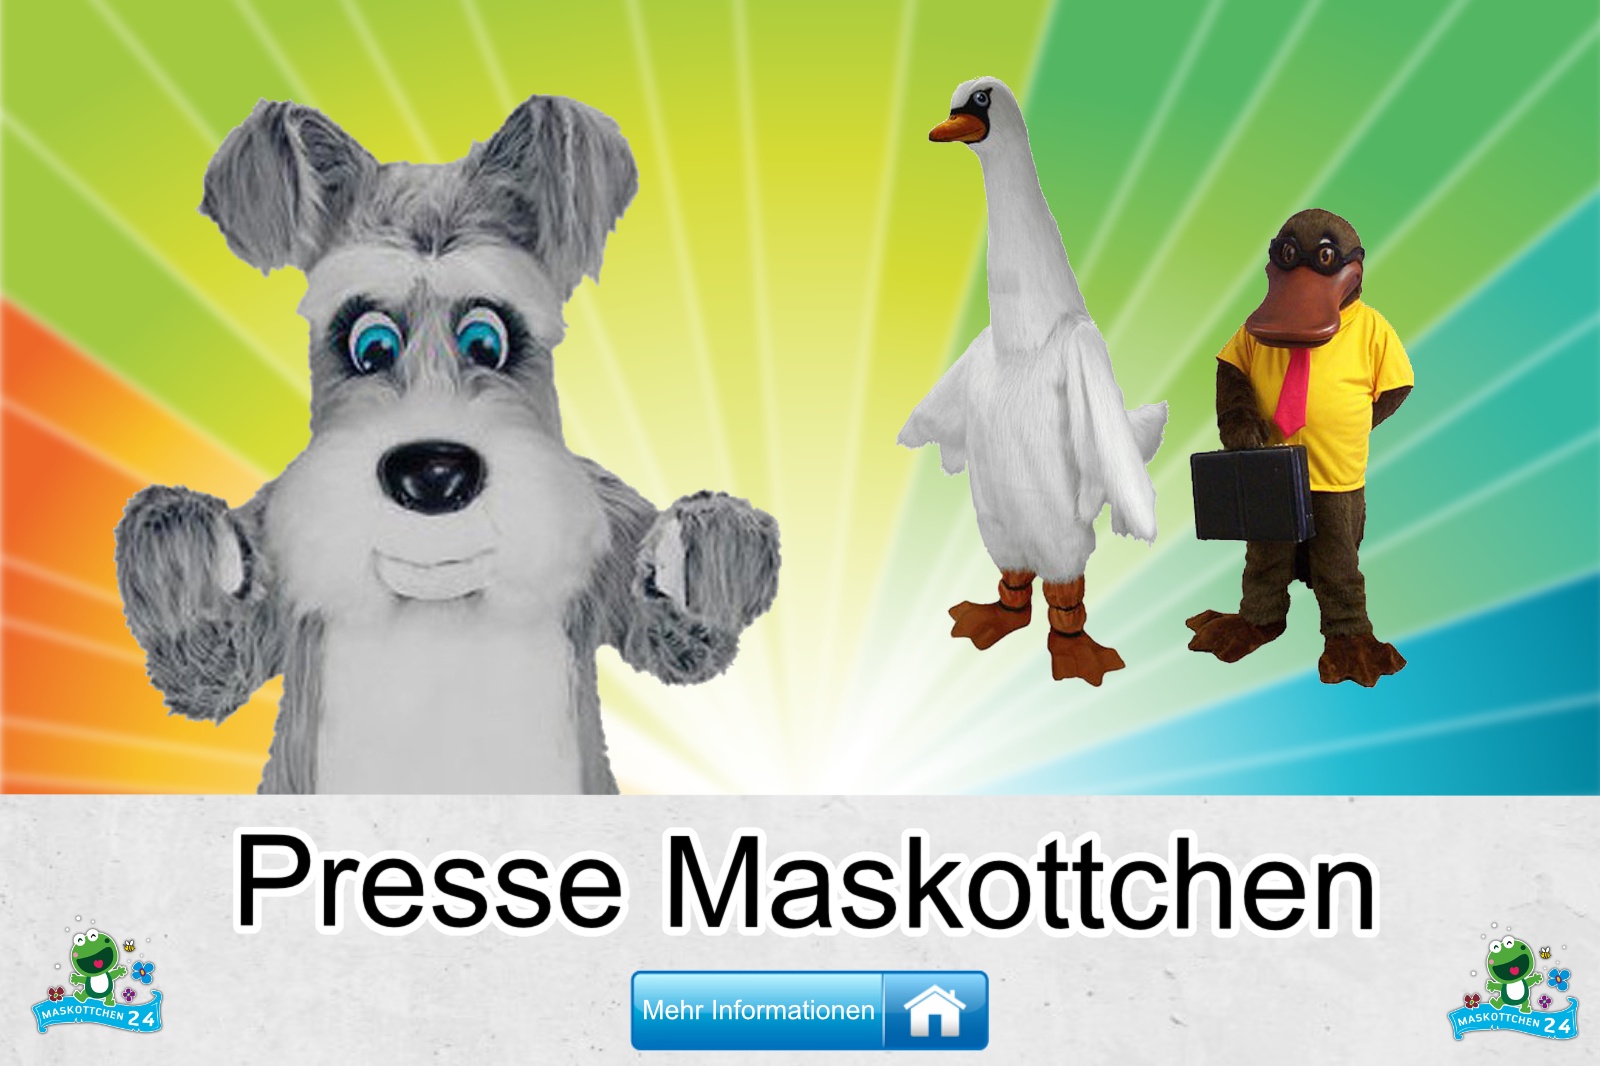 Presse Maskottchen Kostüm kaufen, günstige Produktion / Herstellung.